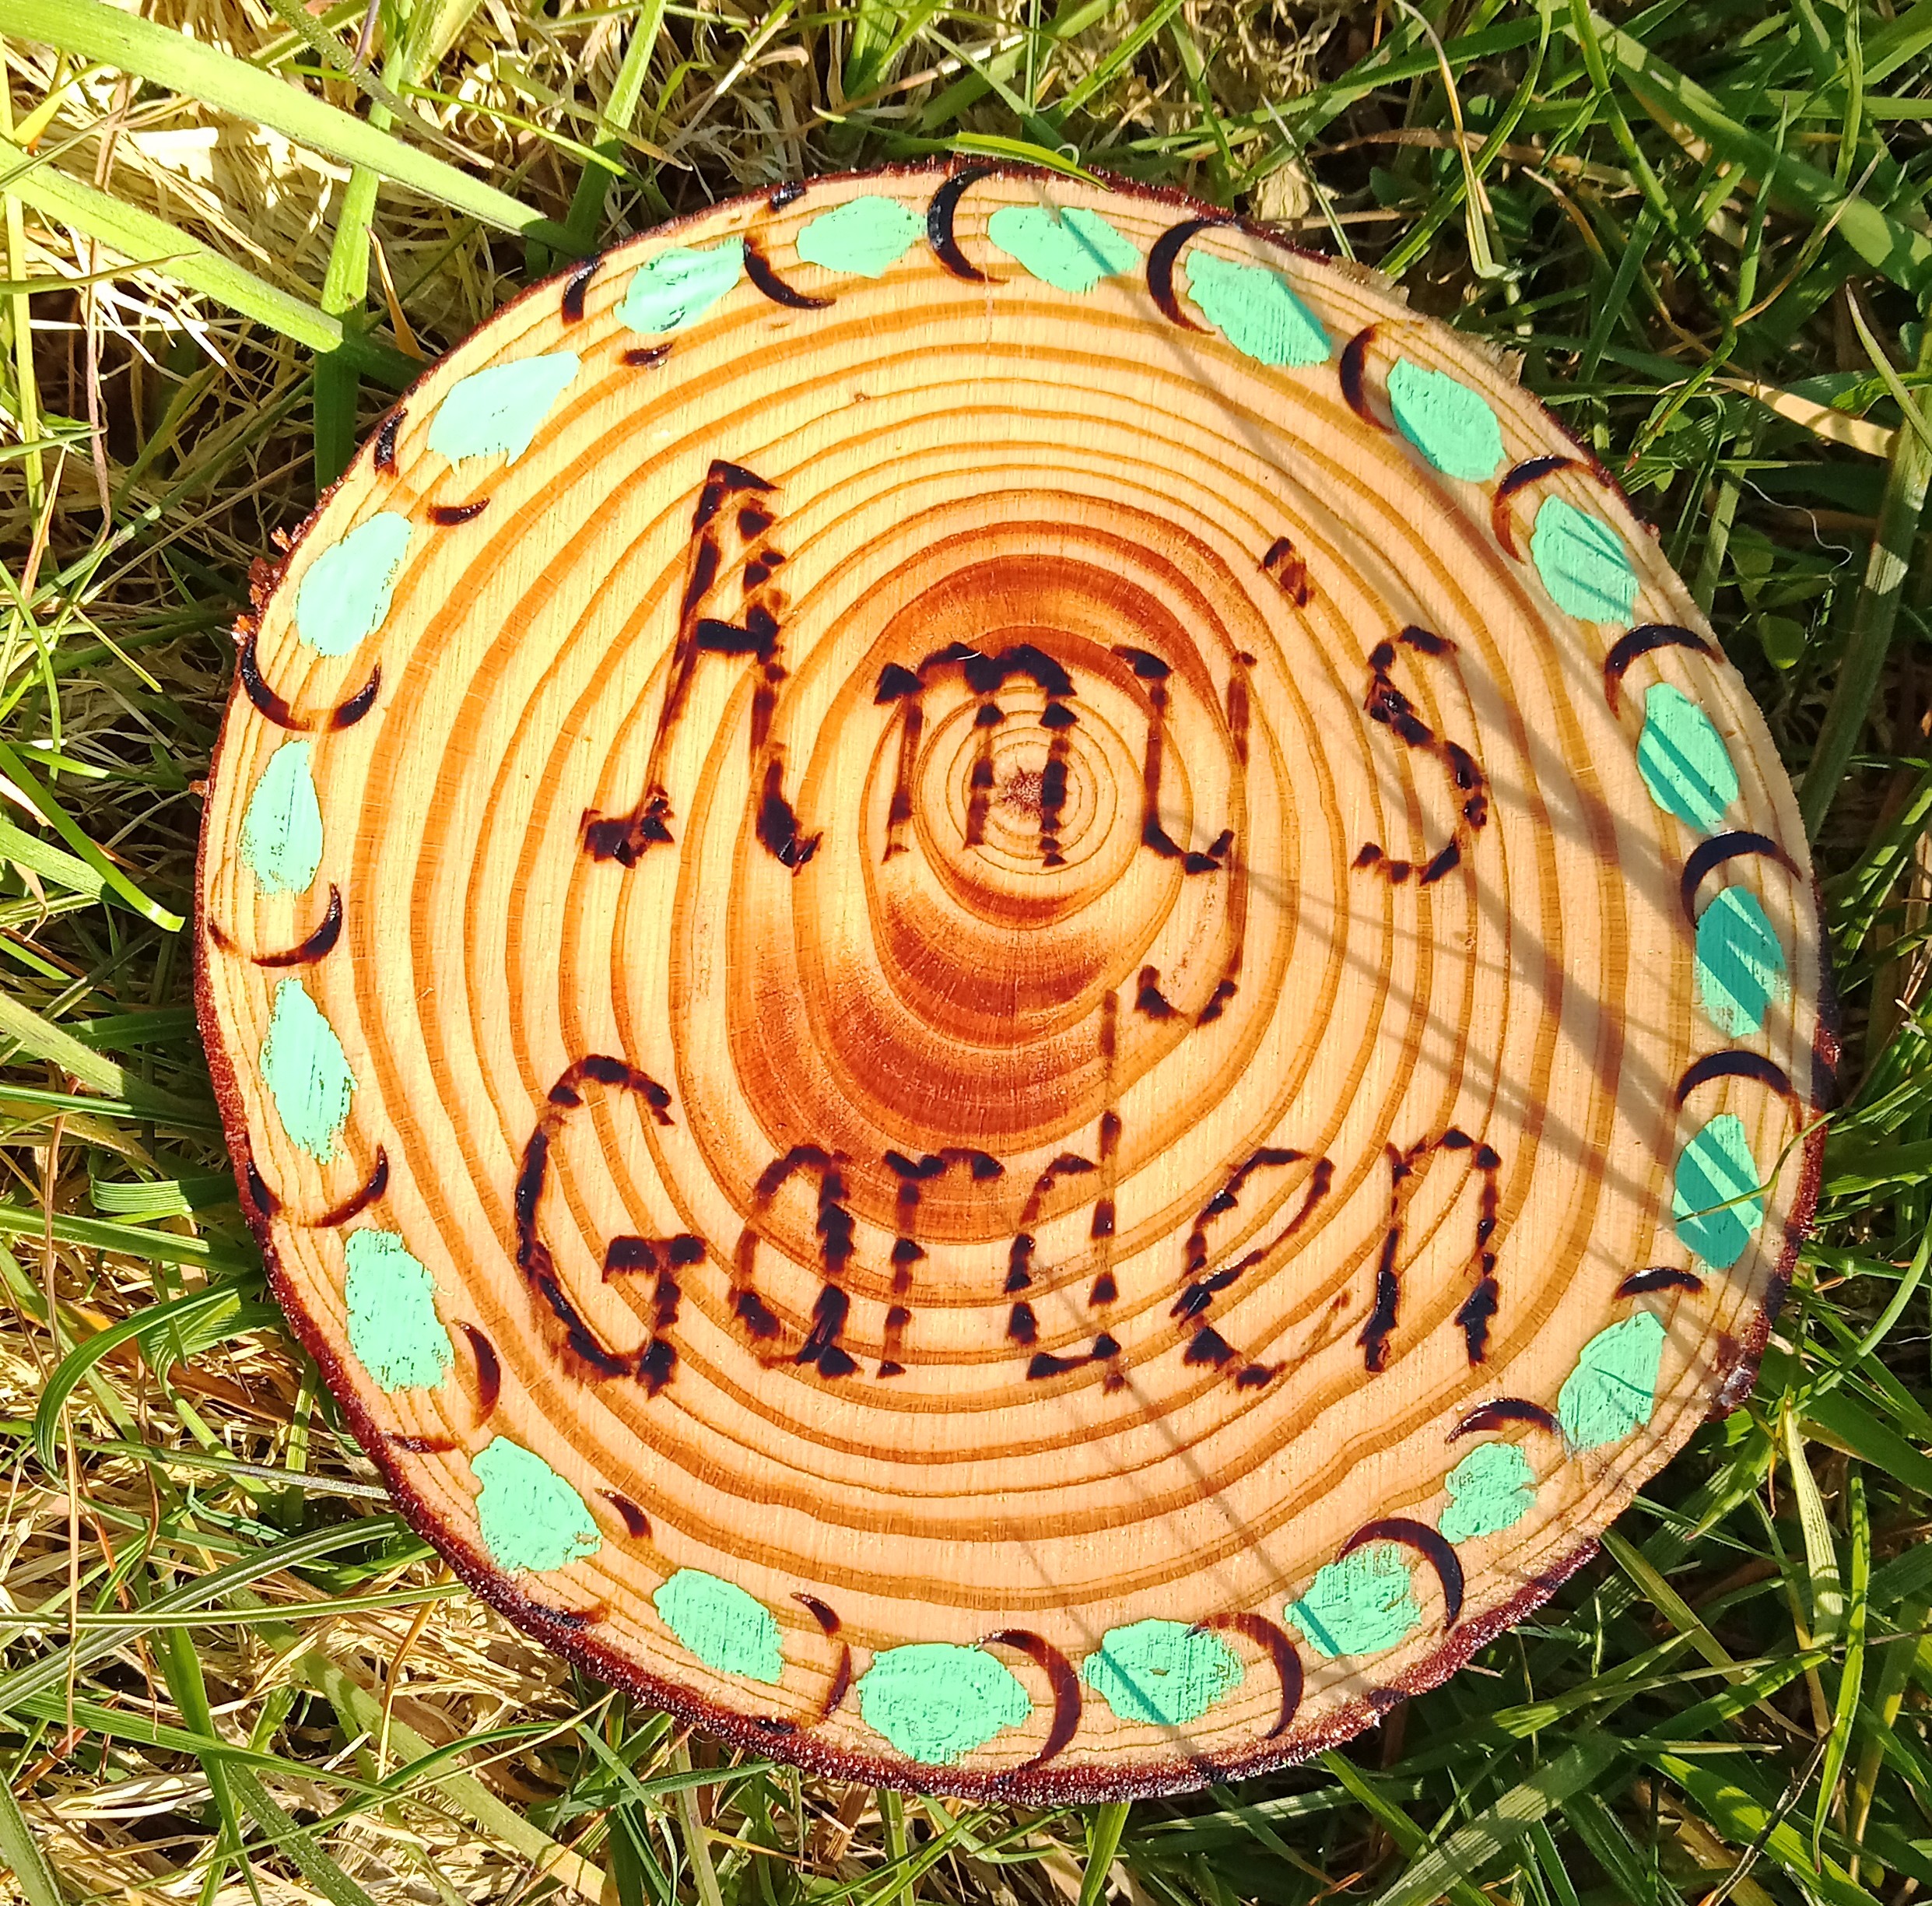 Amy's Garden sign